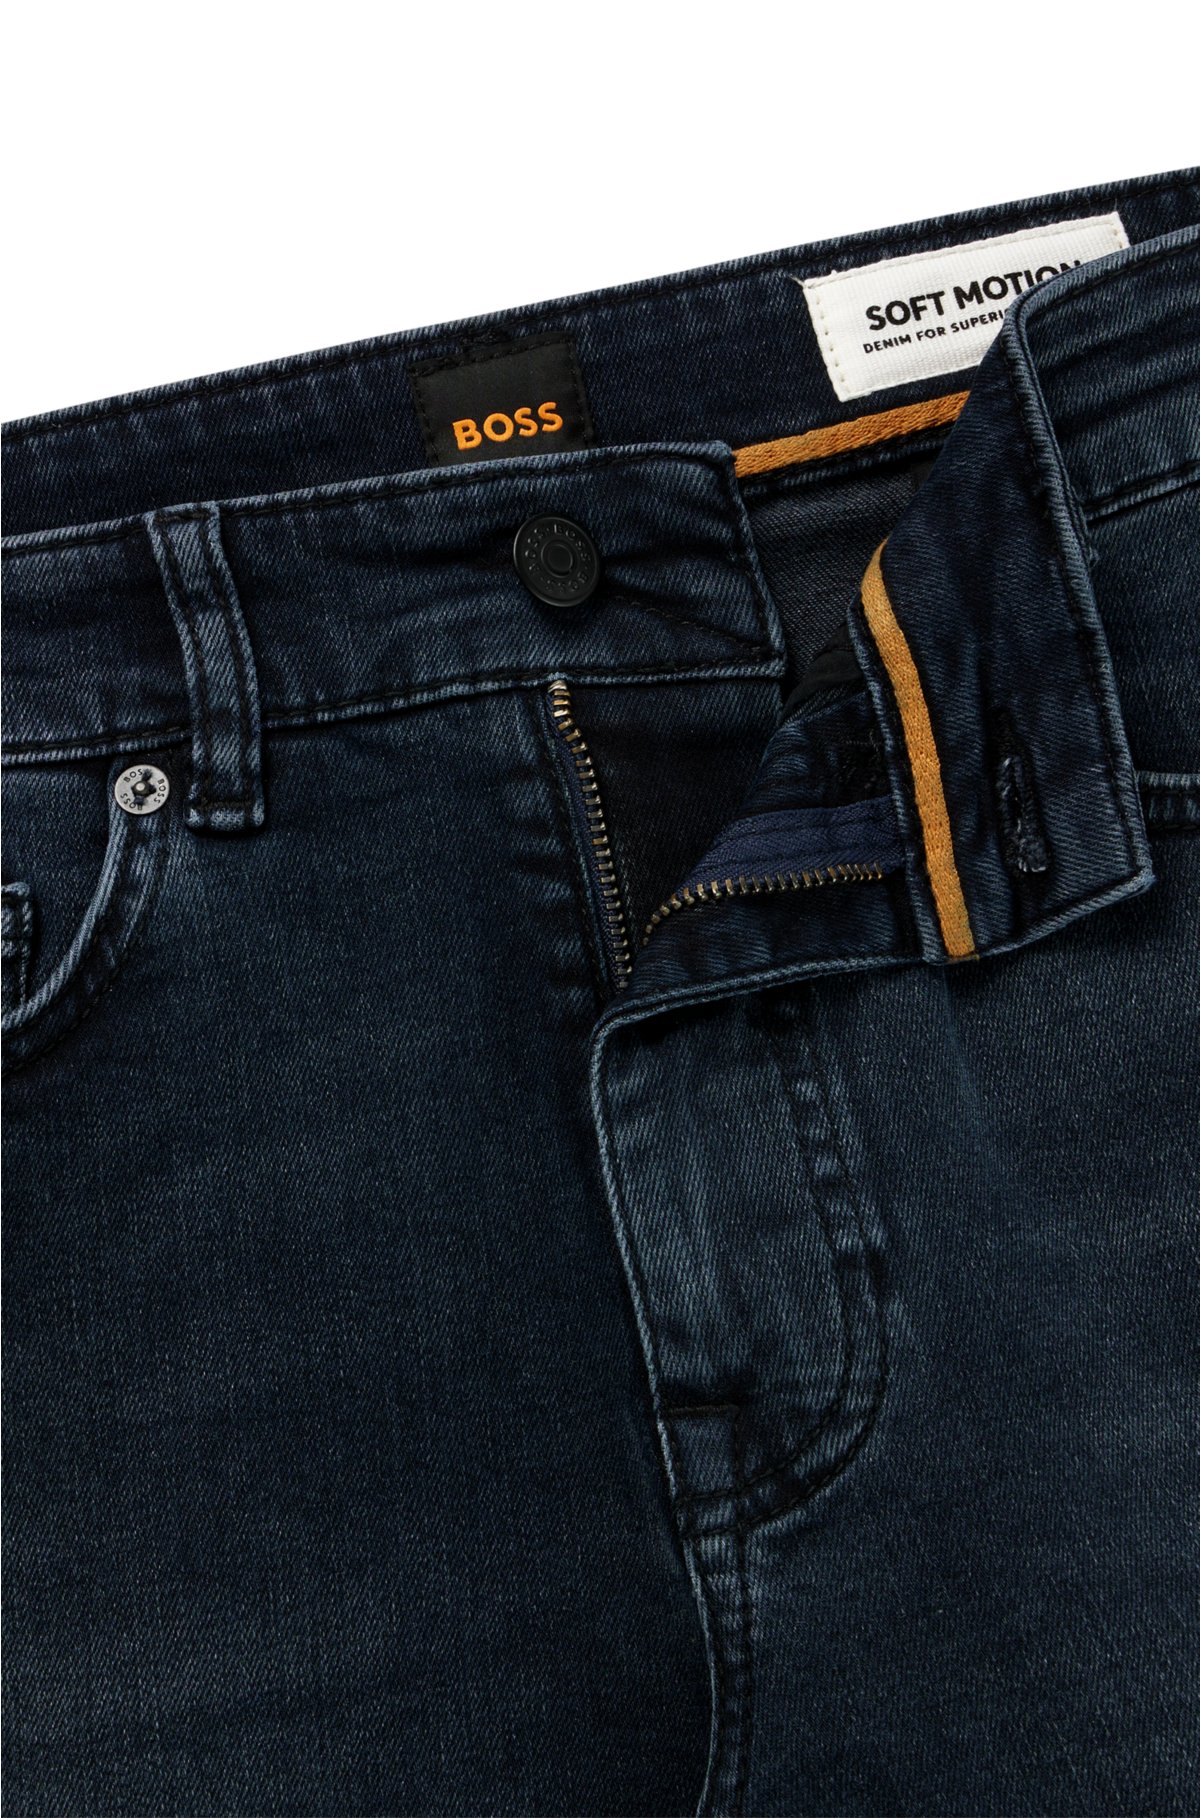 BOSS - Slim-fit jeans denim super-stretch in dark-blue